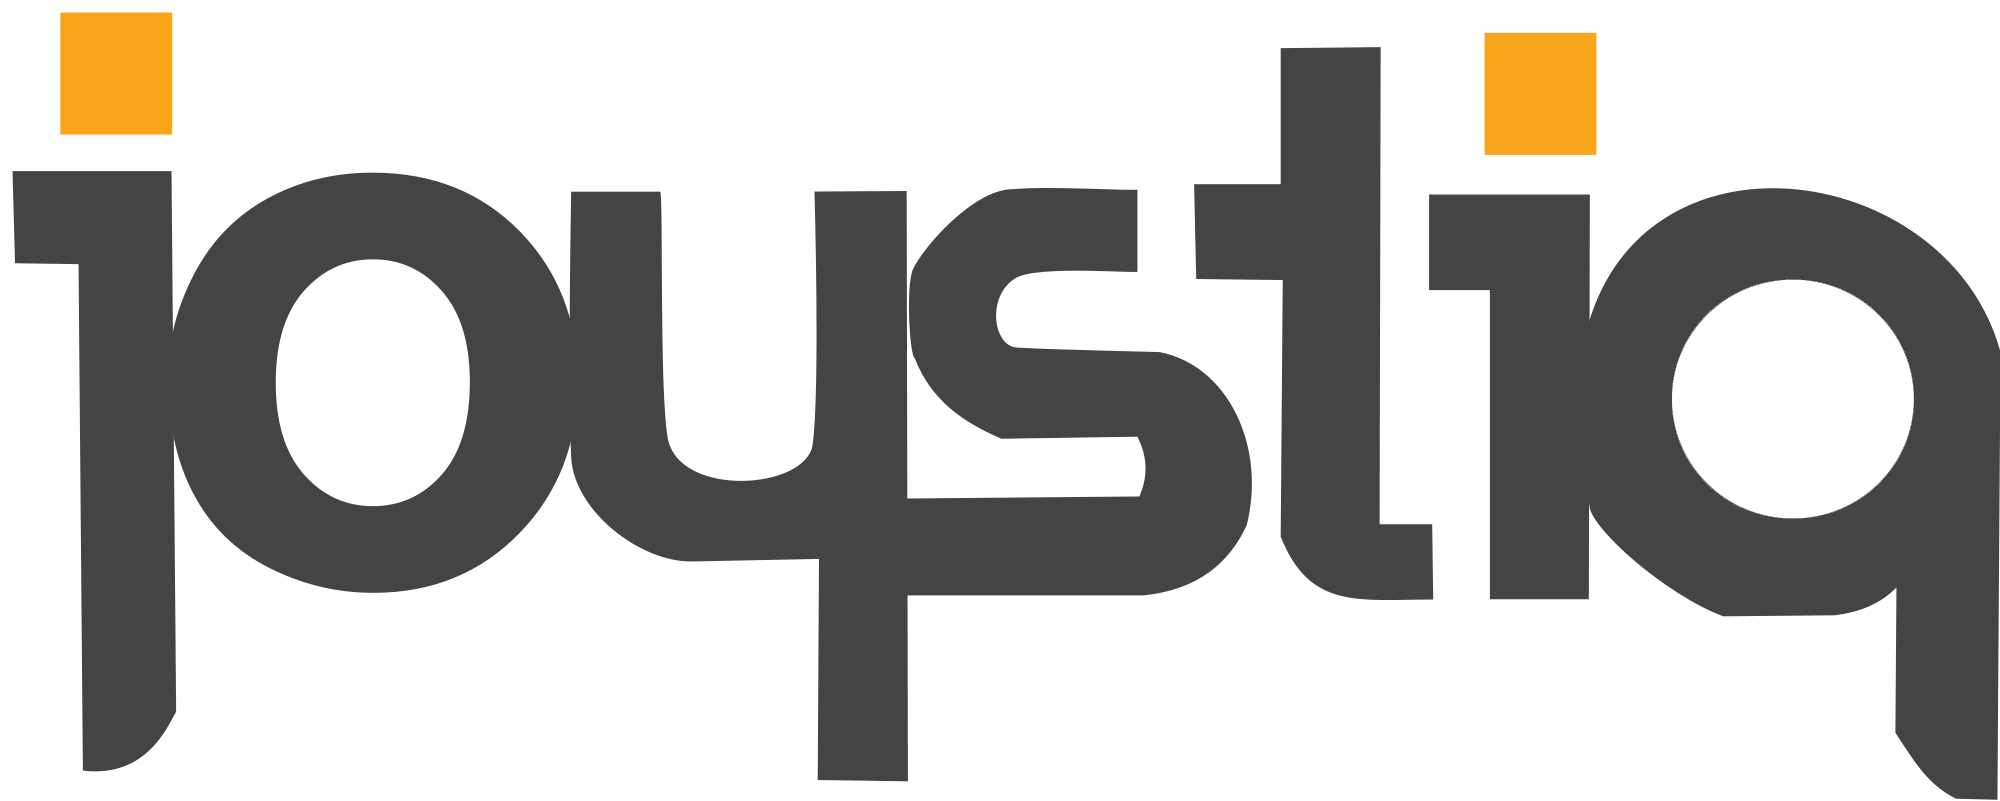 Joystiq Logo - Joystiq